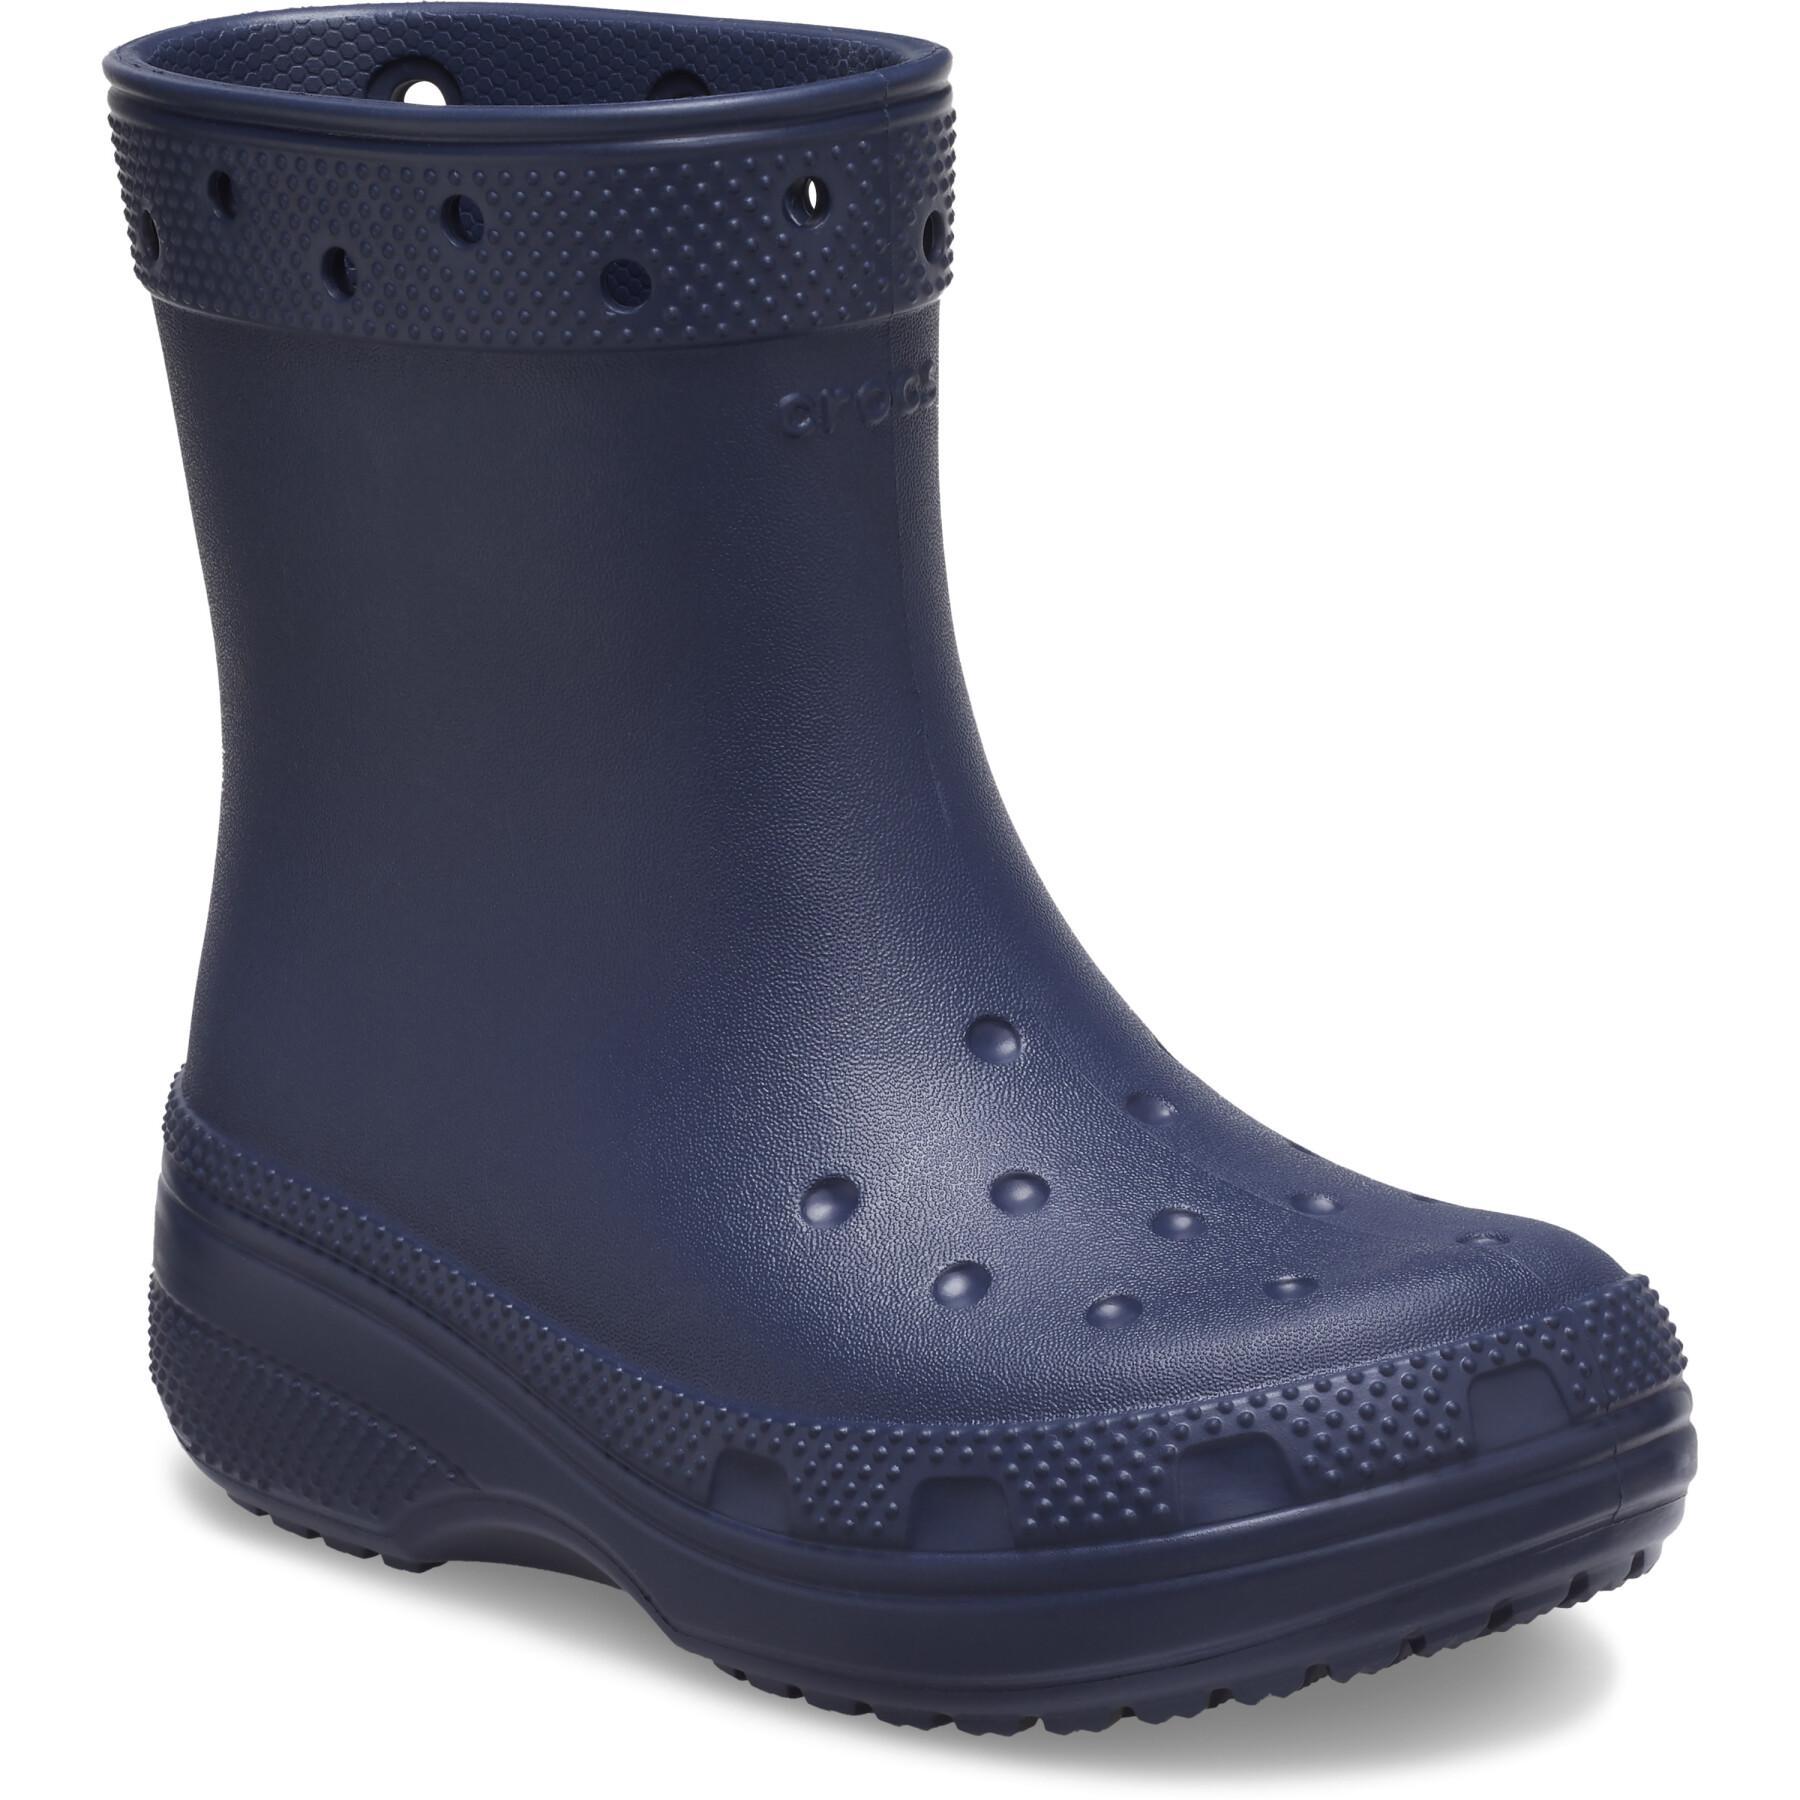 Classic boot t navy baby Crocs